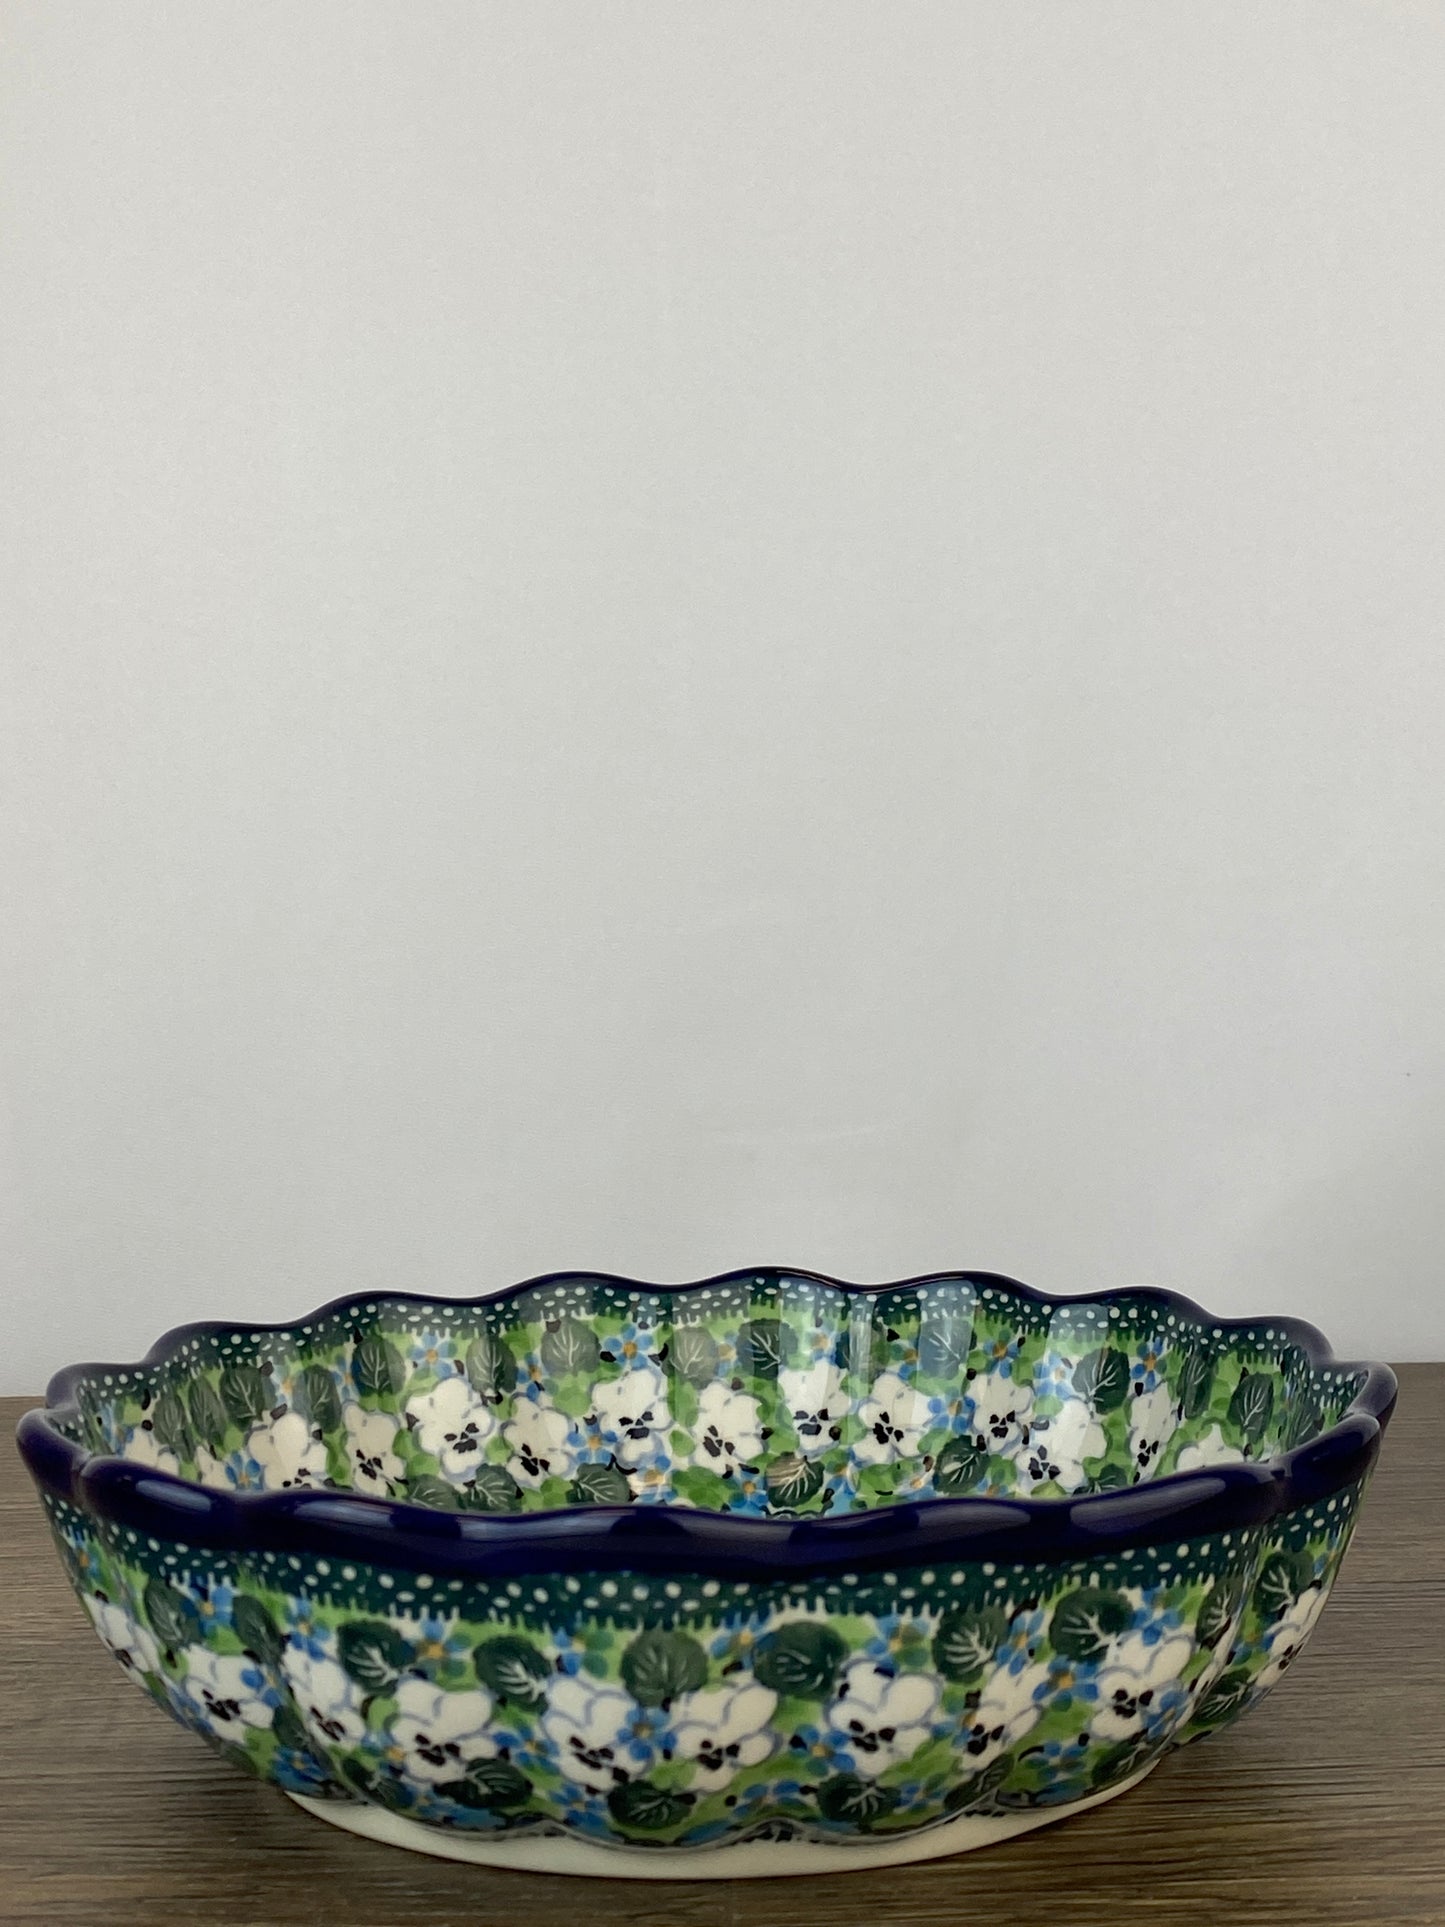 Unikat Scalloped Bowl - Shape 974 - Pattern U4795